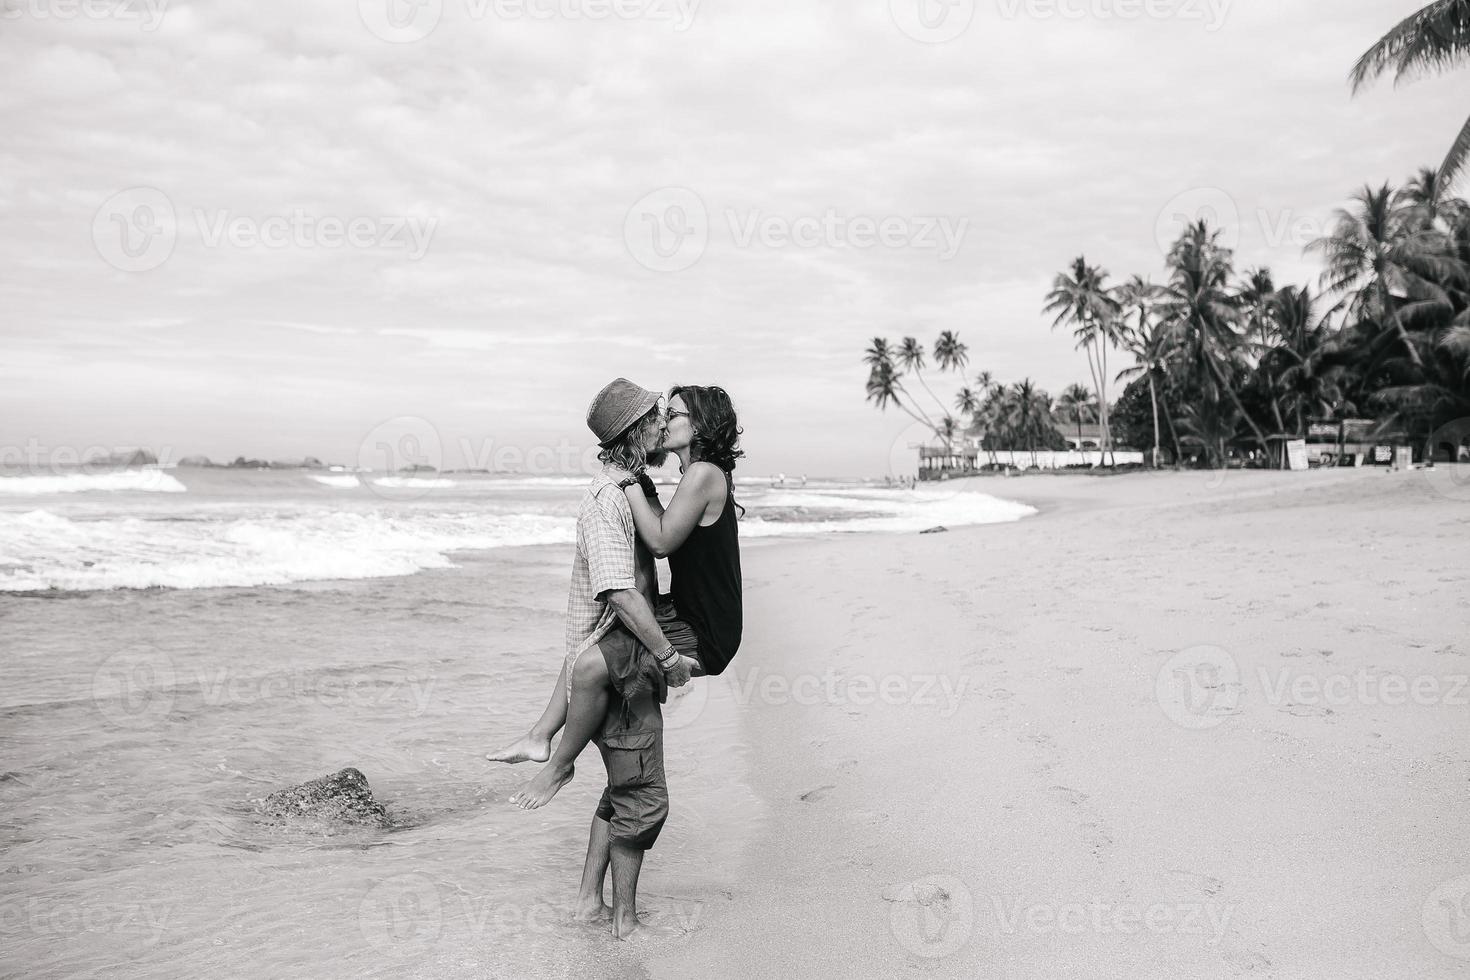 en kille och en flicka är kissing på en strand foto